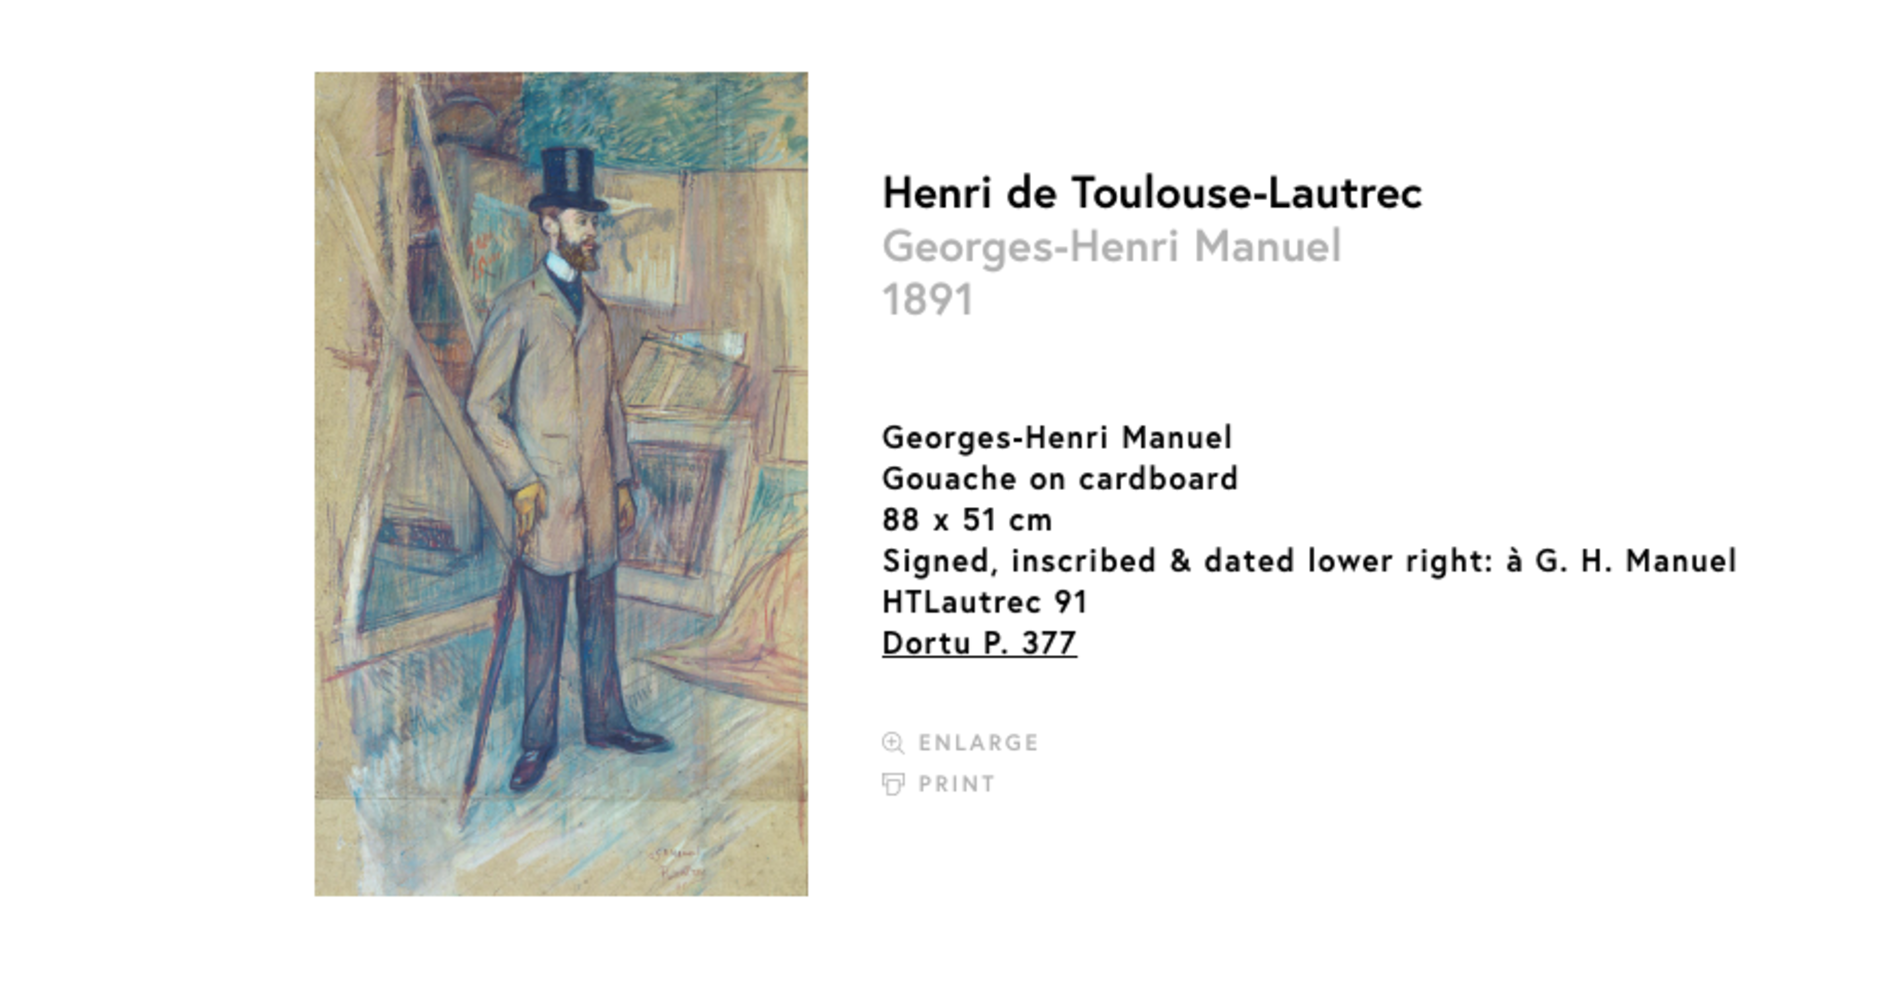 El retrato de Georges-Henri Manuel, por Henri de Toulouse-Lautrec